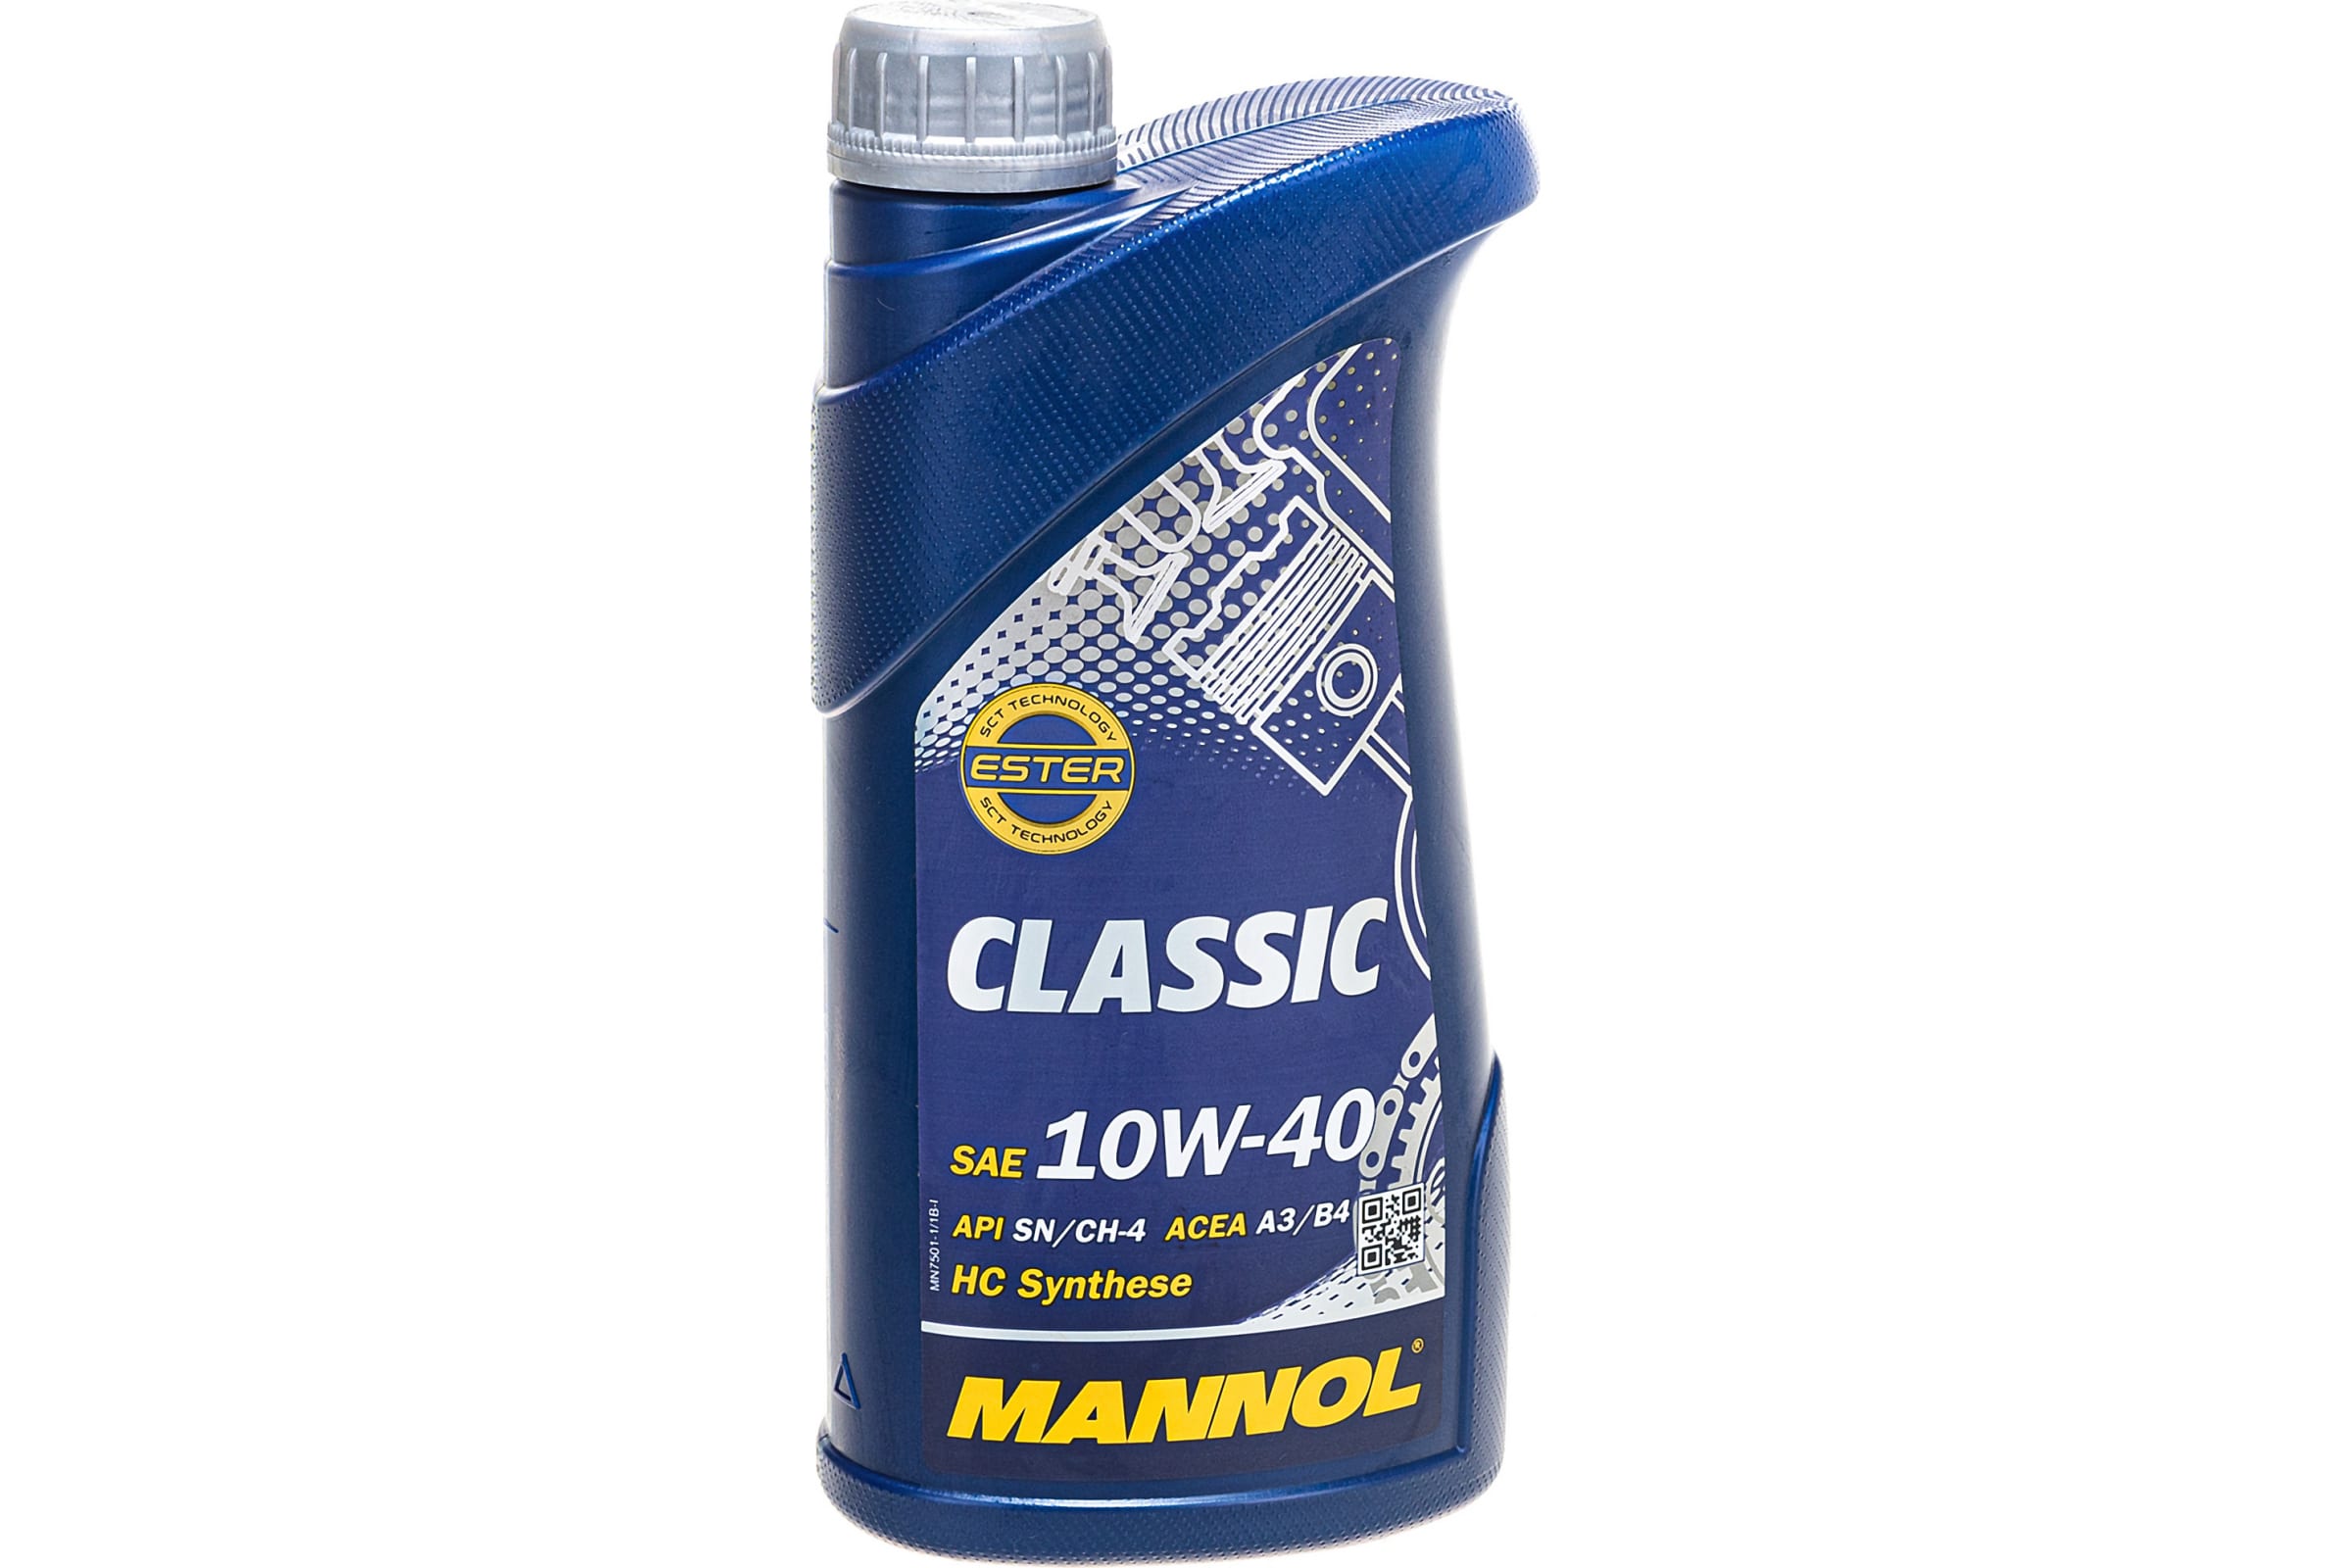 фото Mannol масло mannol classic 10w40 (1л)